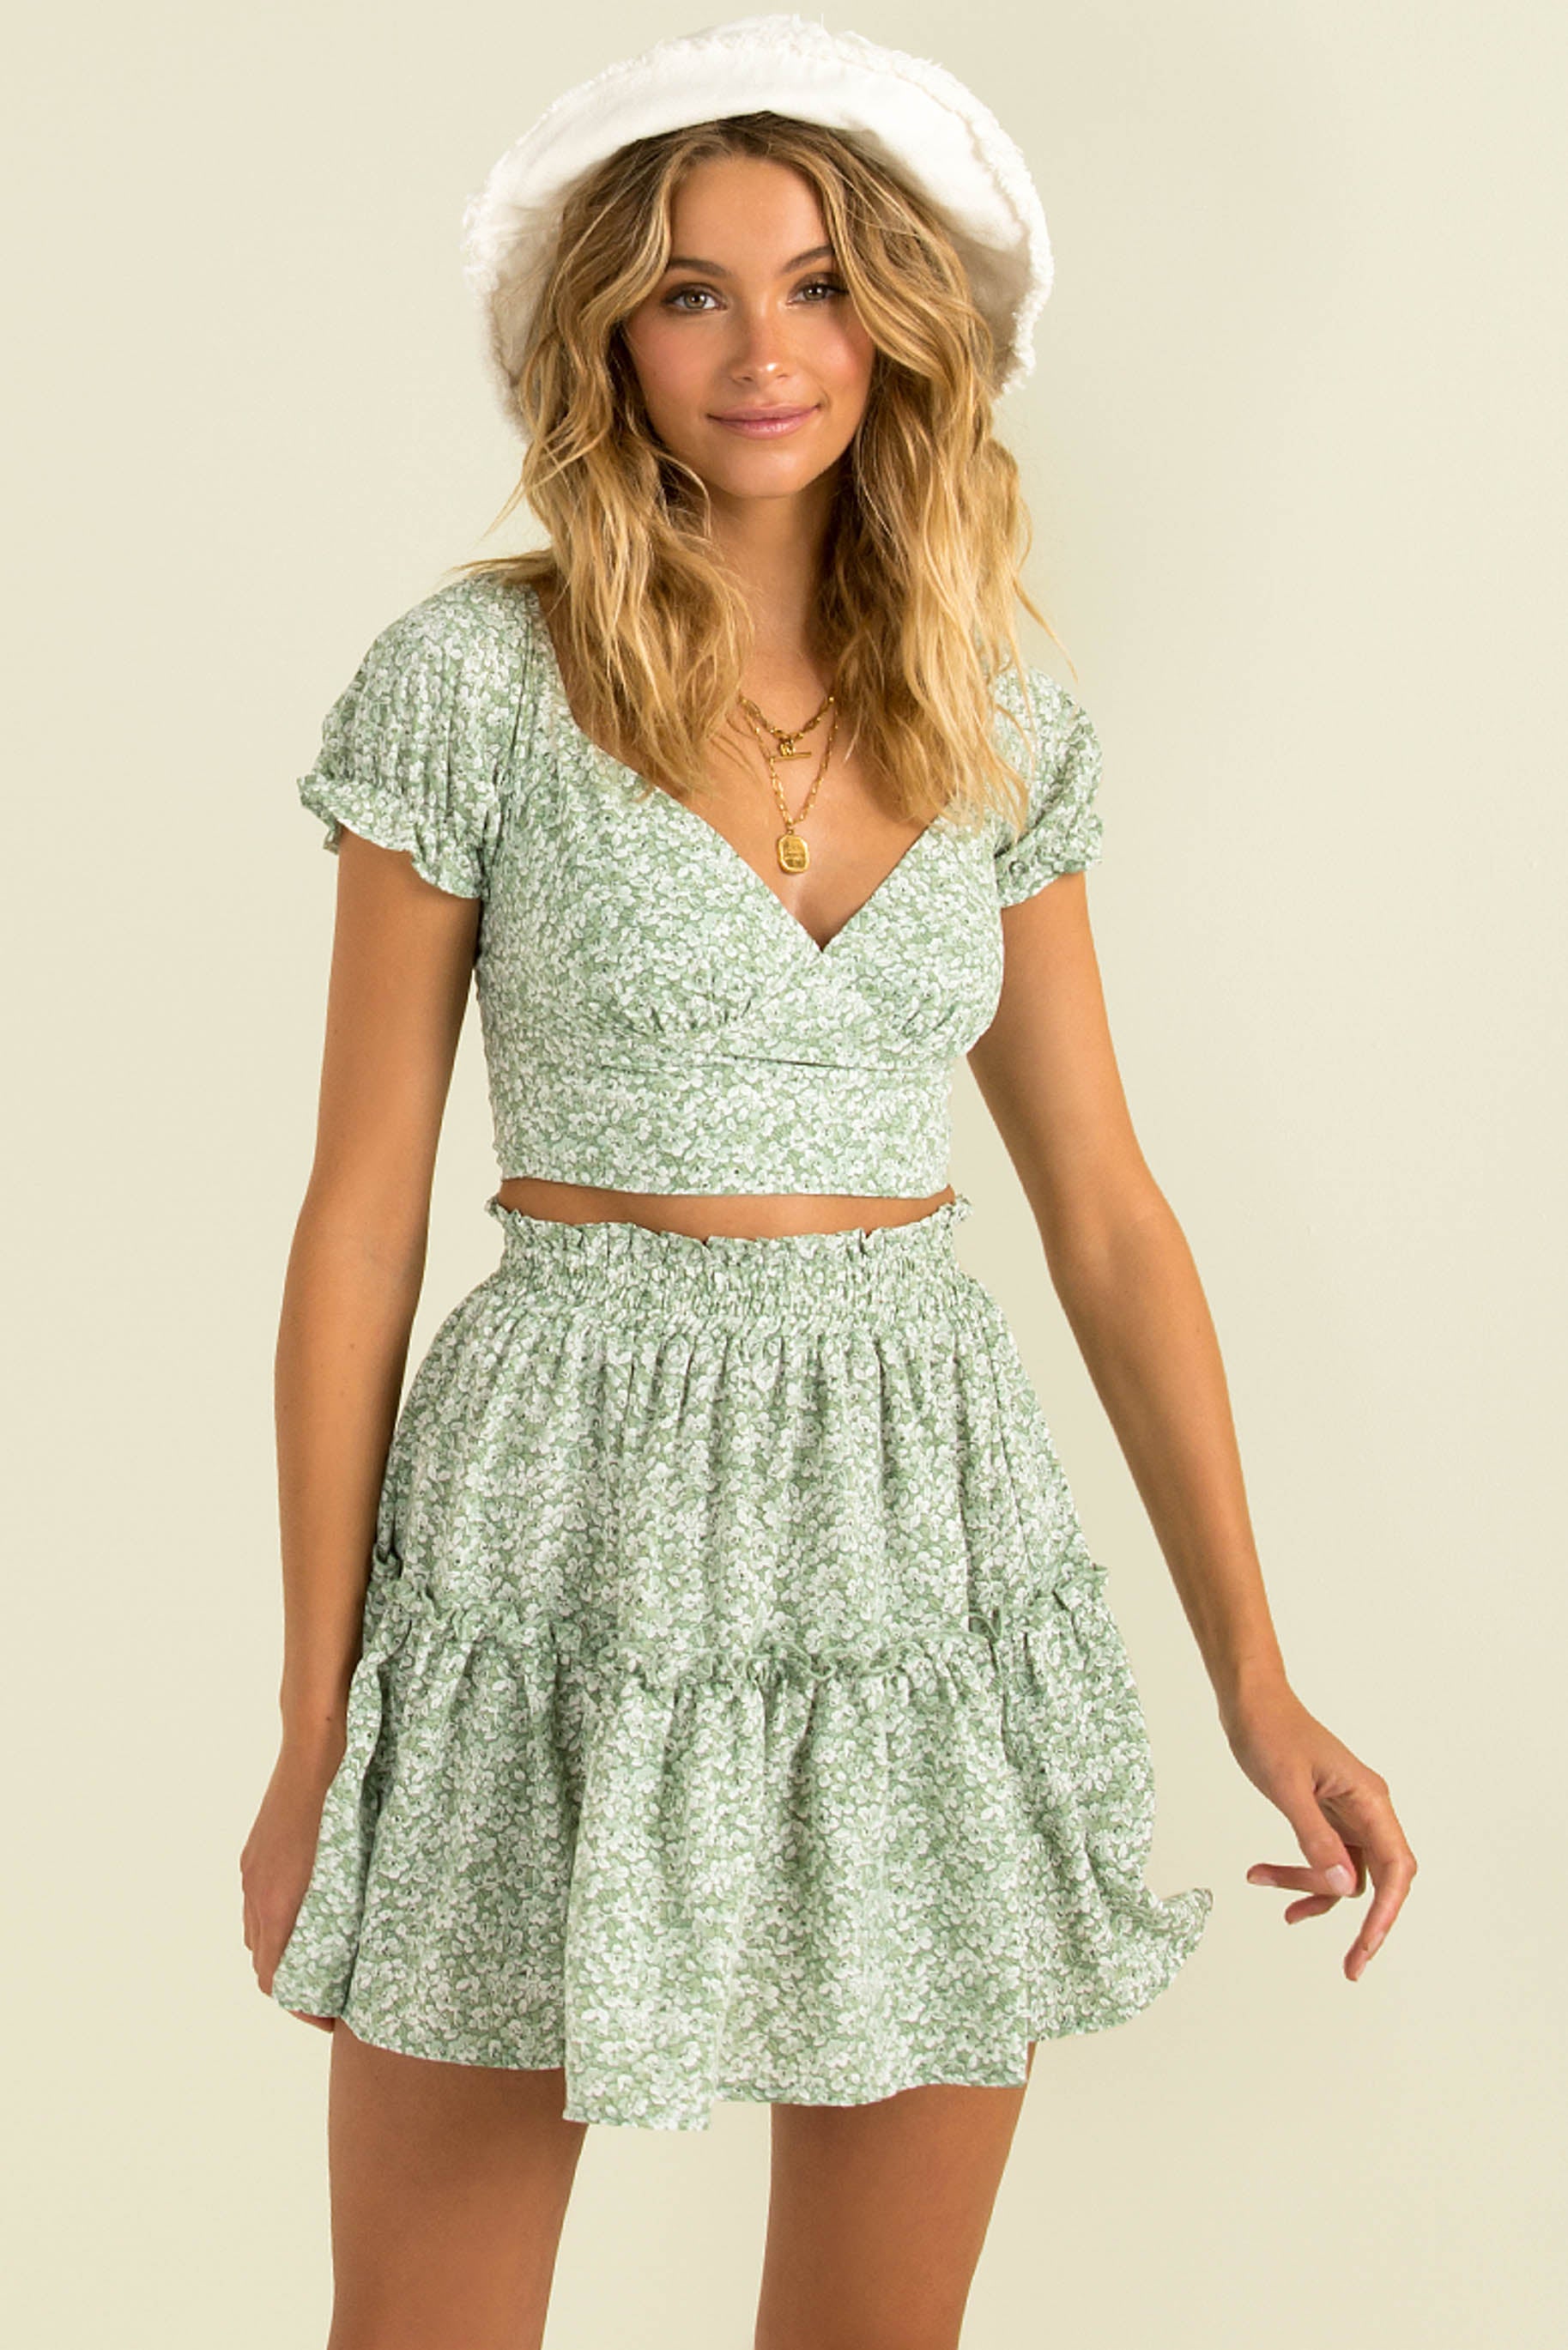 Evalee Skirt / Green Floral